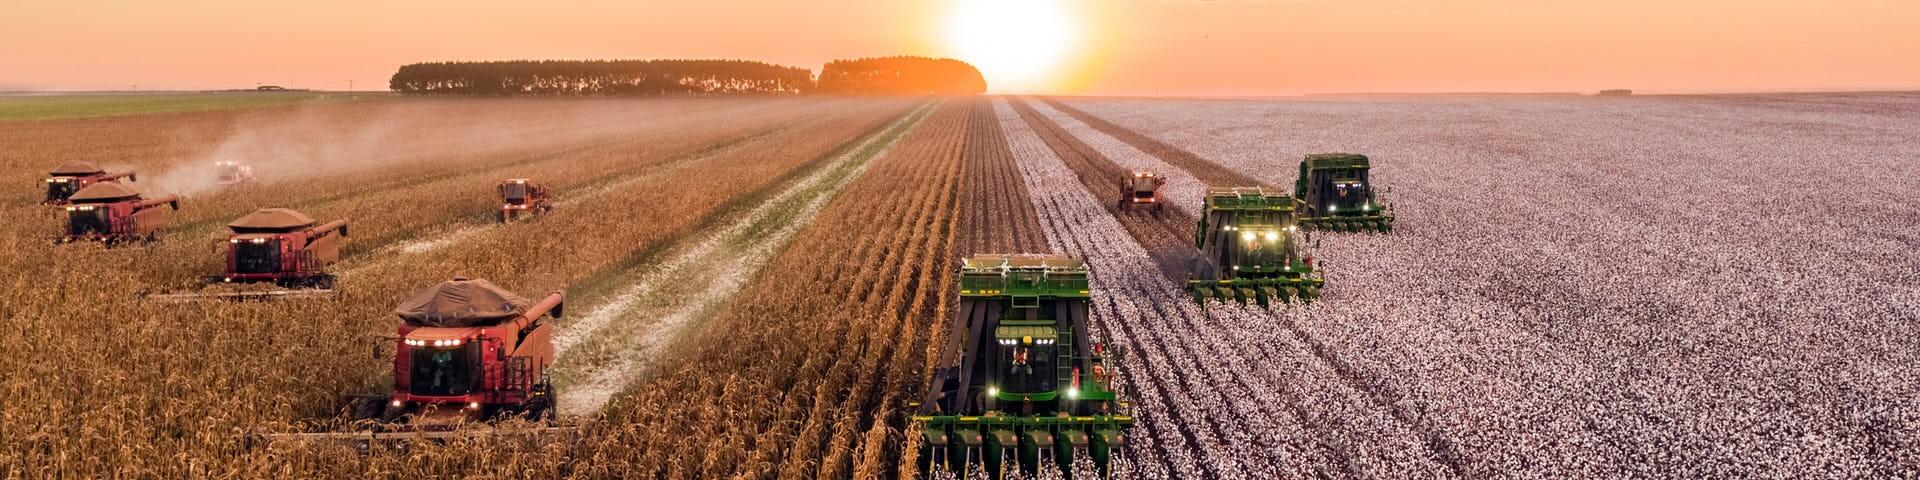 Định hướng nghề nghiệp với ngành Kinh tế nông nghiệp là gì